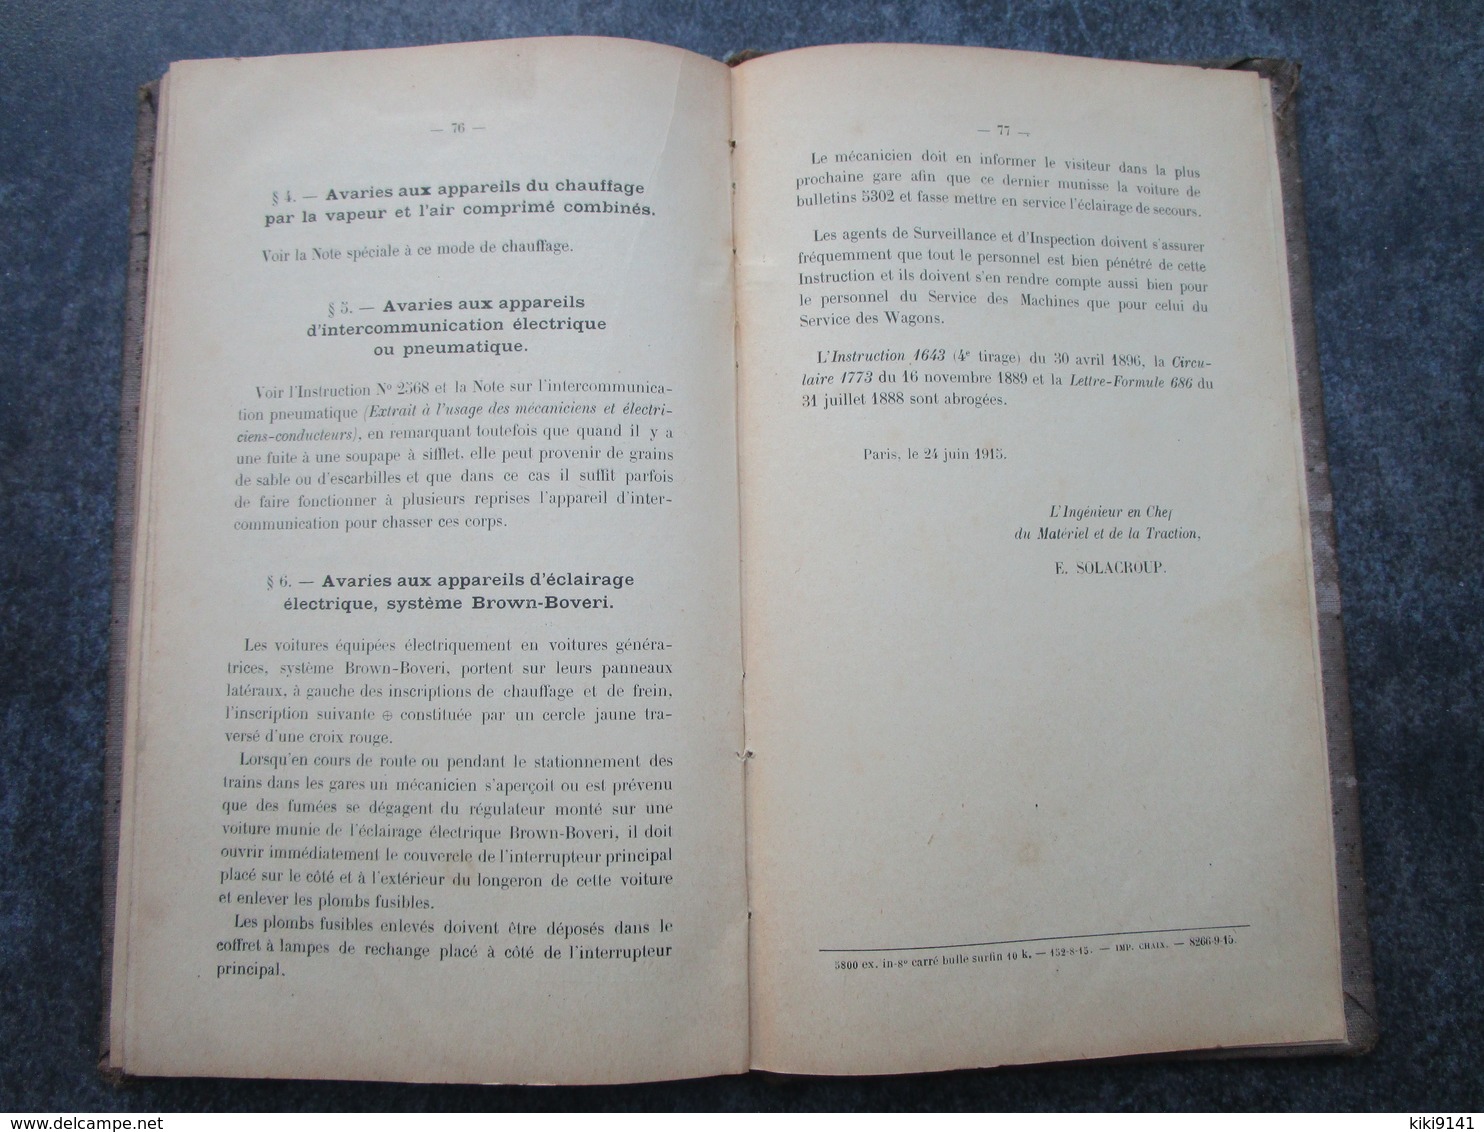 Cie des Chemins de Fer de Paris à Orléans - Avaries de Route aux Locomotives à vapeur, Tenders, etc...(78 pages)